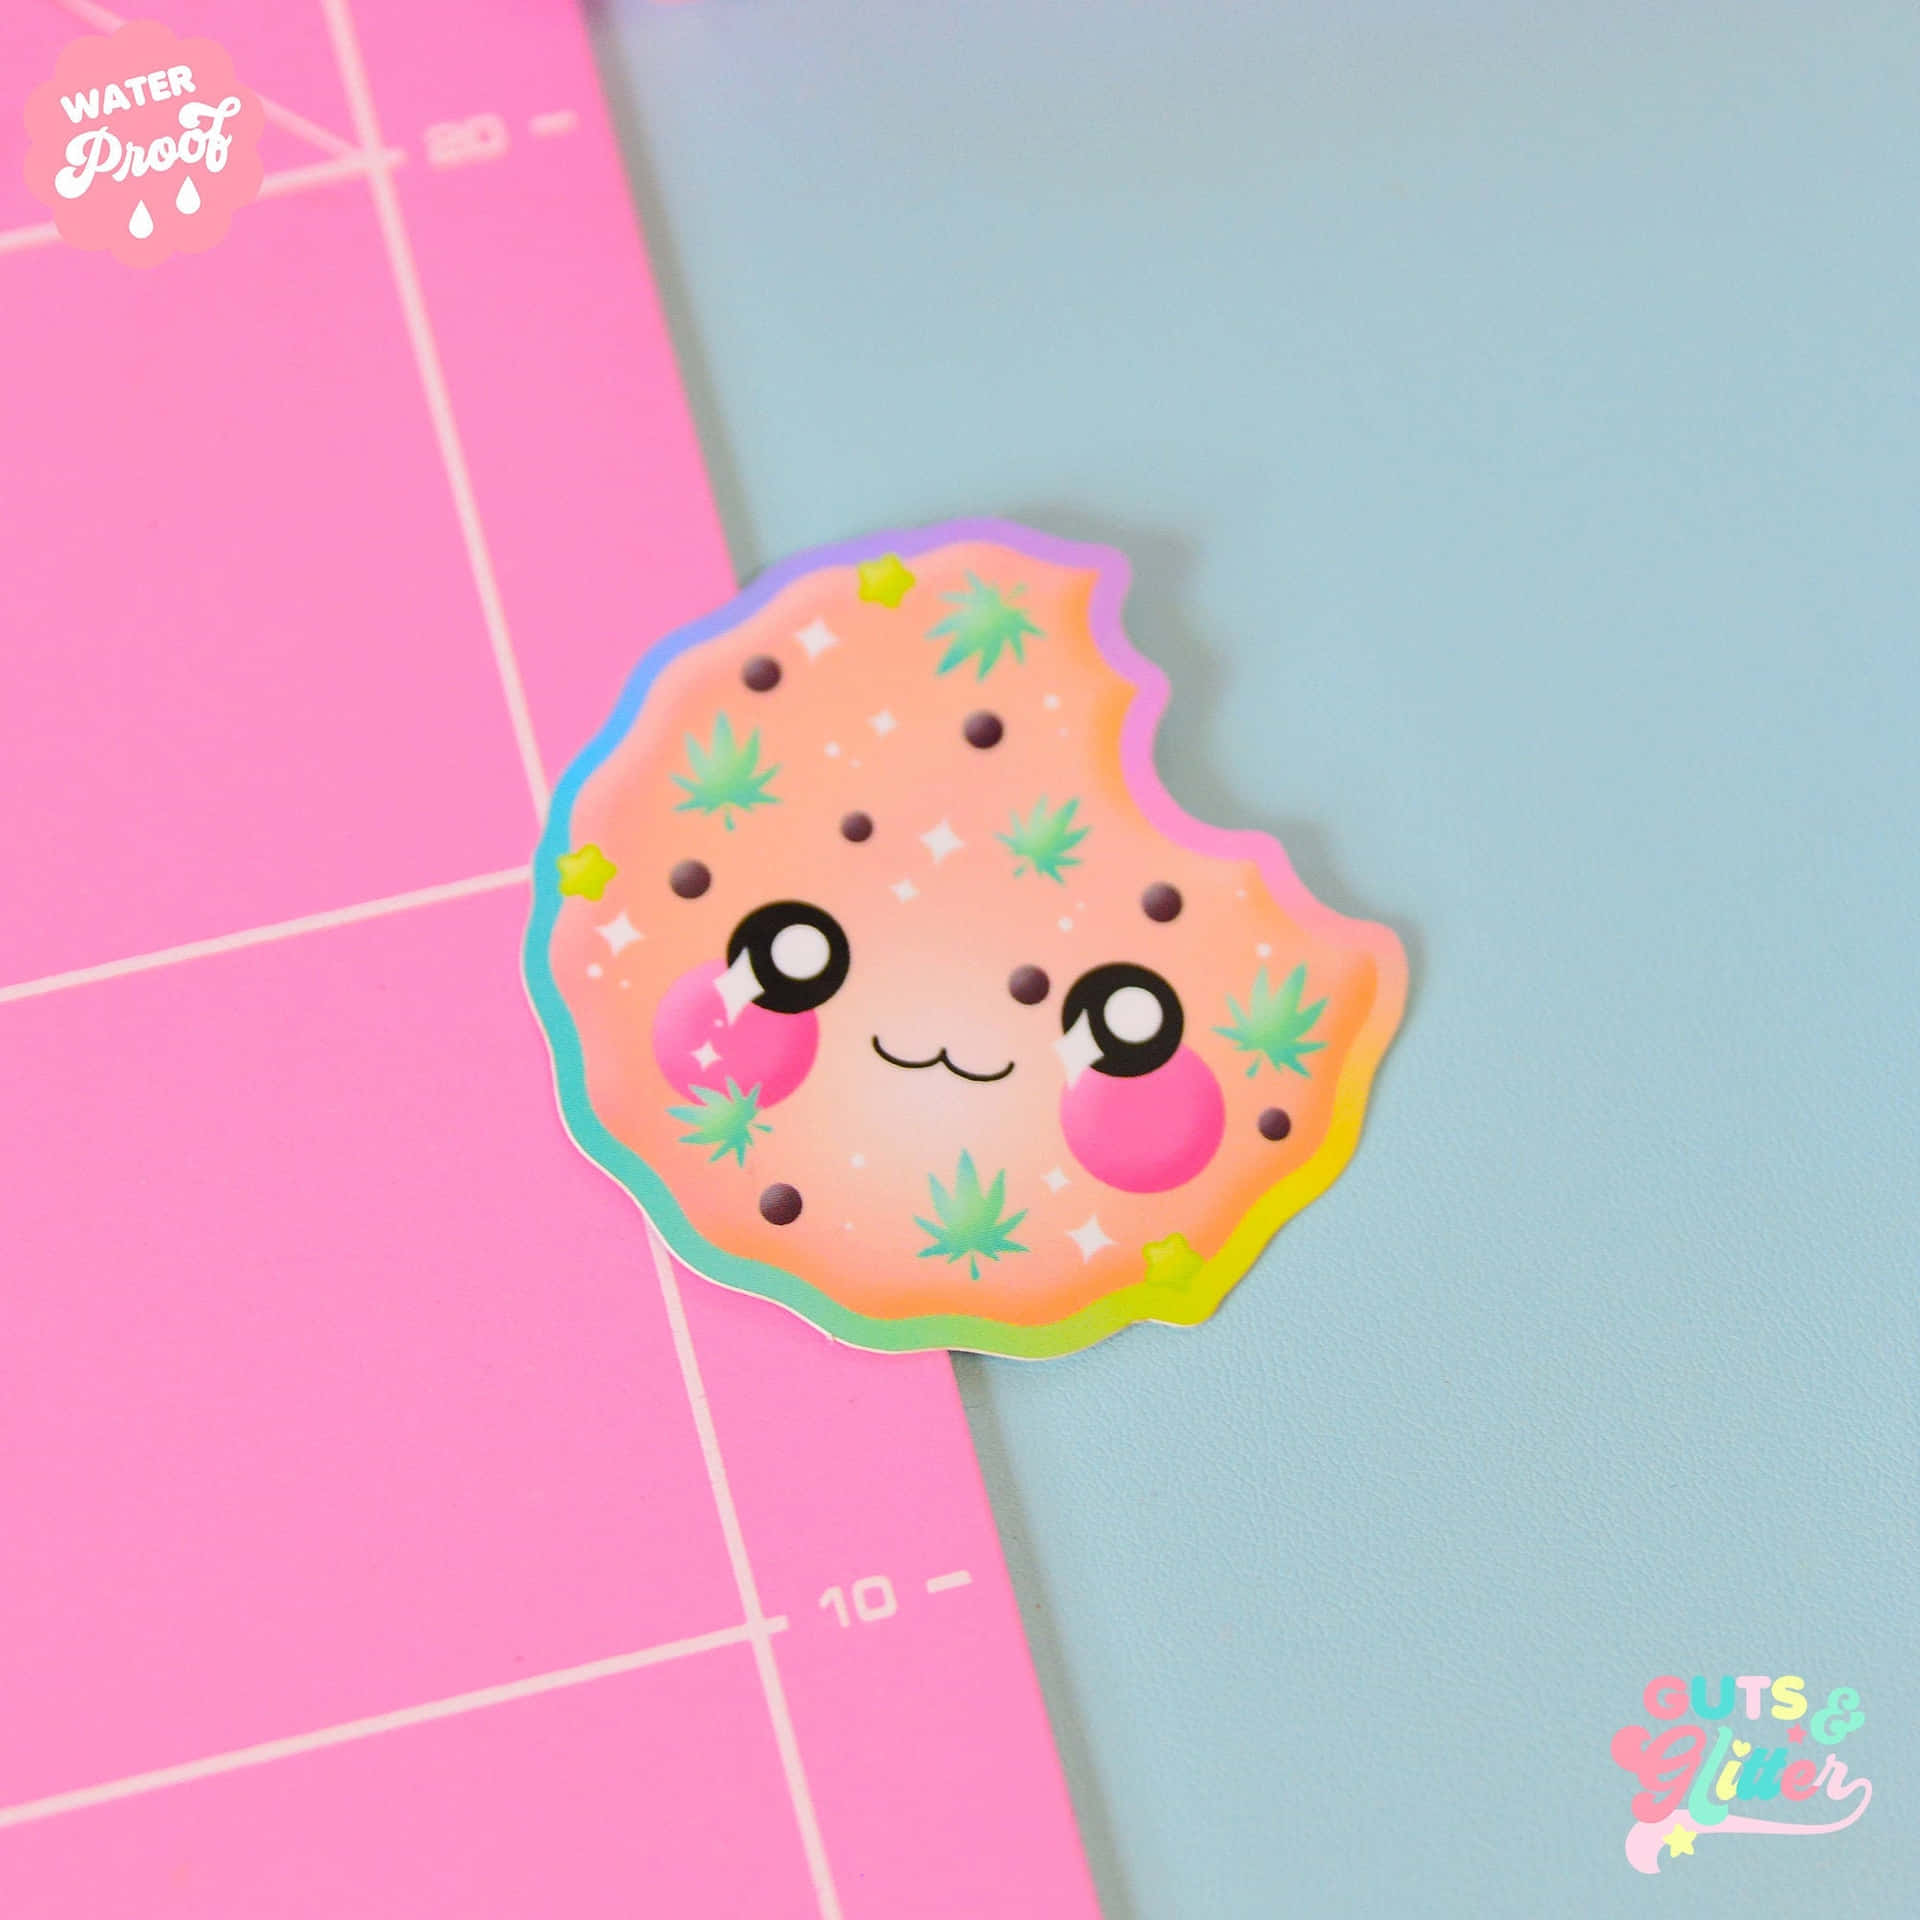 A Cute Kawaii Donut Sticker On A Pink Background Wallpaper